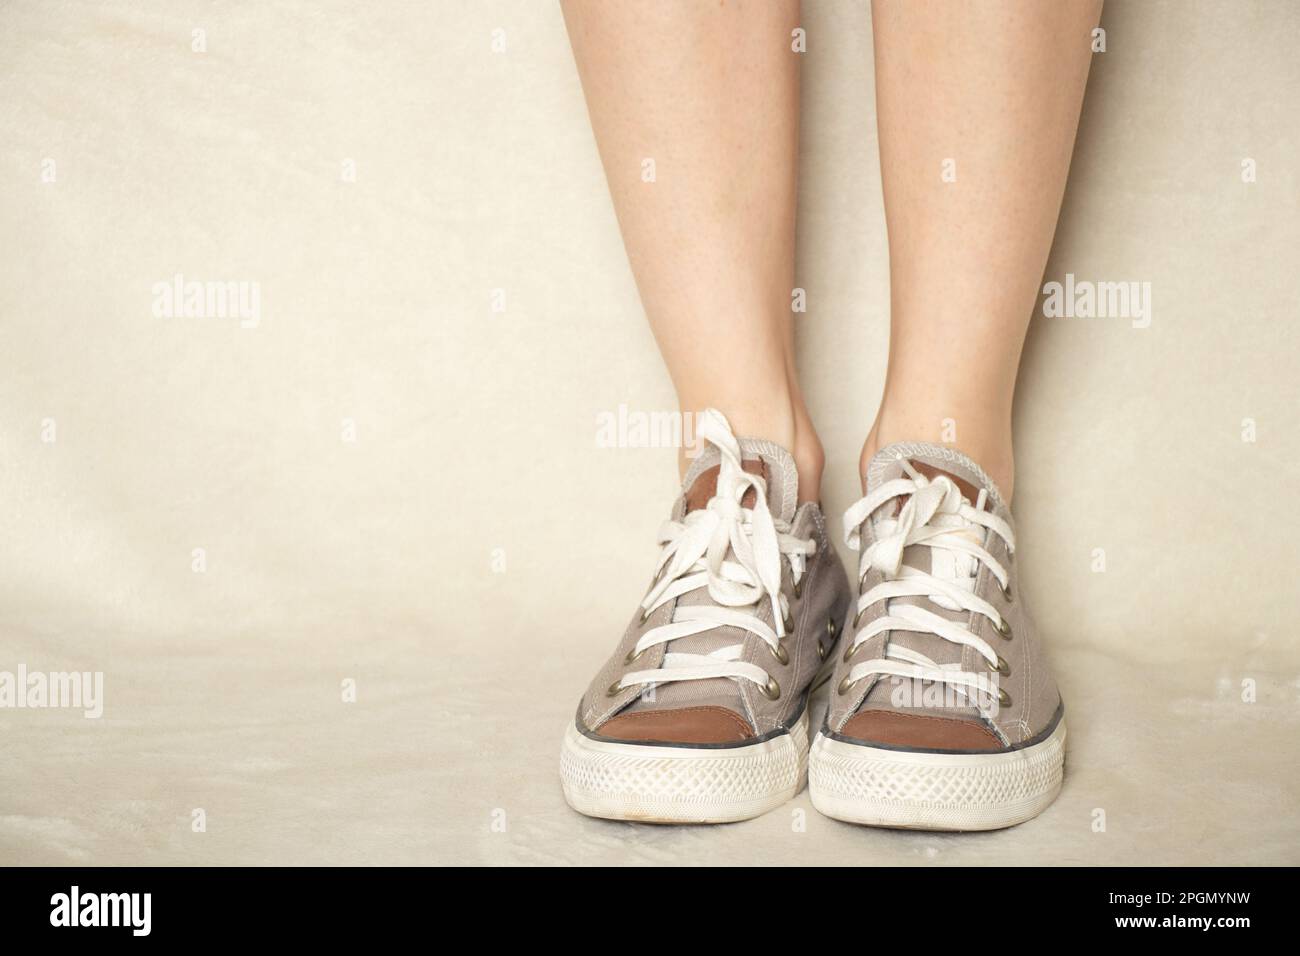 Mujer joven moderna con hermosas piernas delgadas en zapatillas blancas de  moda camina por la calle. zapatos deportivos de mujer con estilo. estilo de  verano. primer plano de piernas femeninas con zapatos.